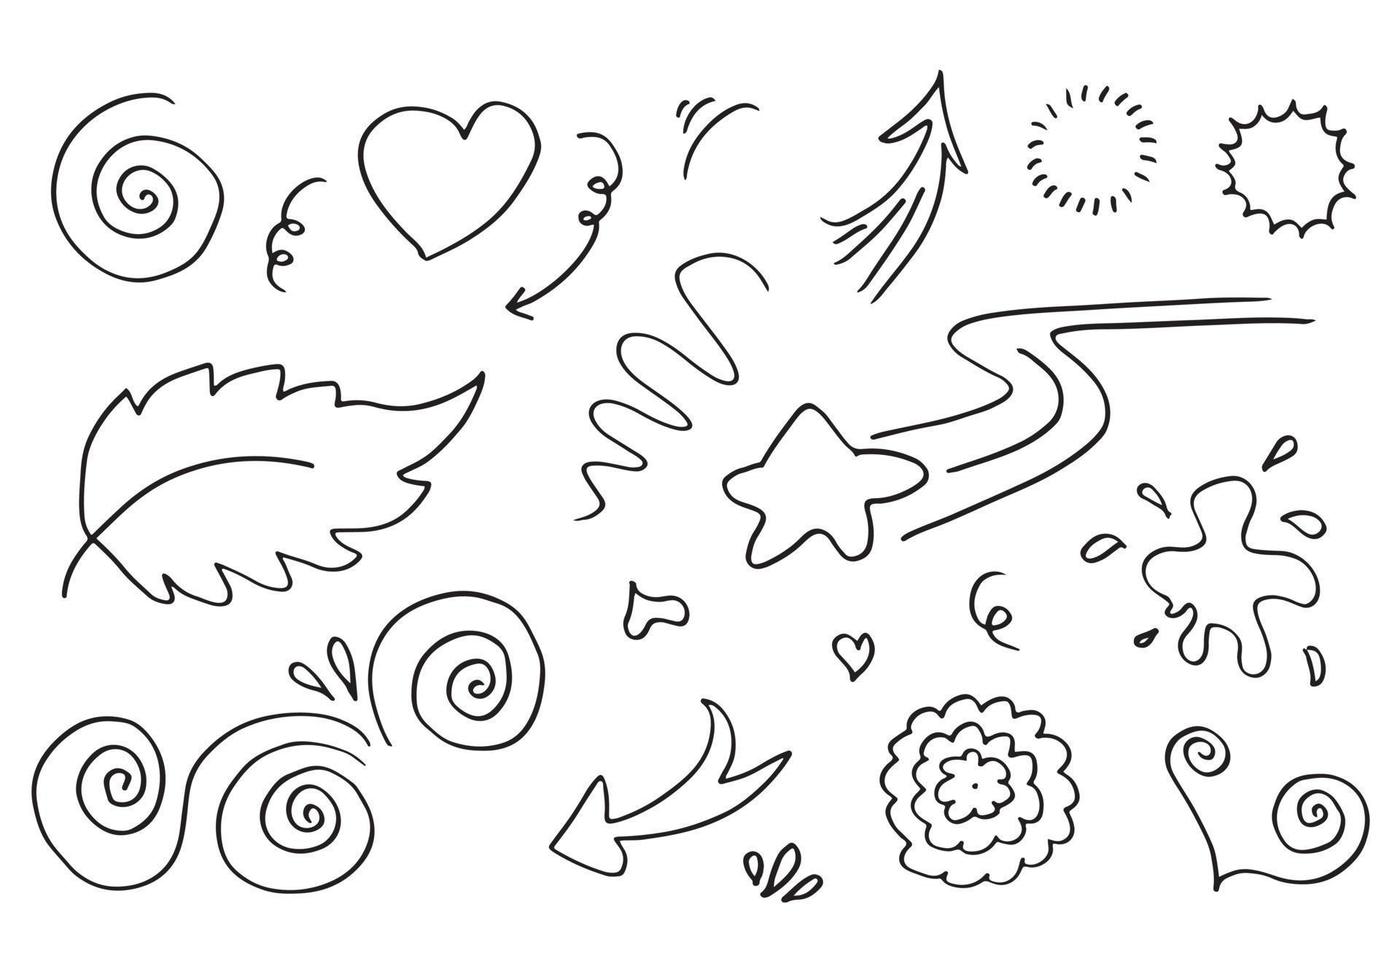 handgezeichnete Set-Elemente, schwarz auf weißem Hintergrund. Pfeil, Herz, Liebe, Stern, Blatt, Sonne, Licht, Blume, Swishes, Swoops, Betonung, Strudel, für Konzeptdesign. vektor